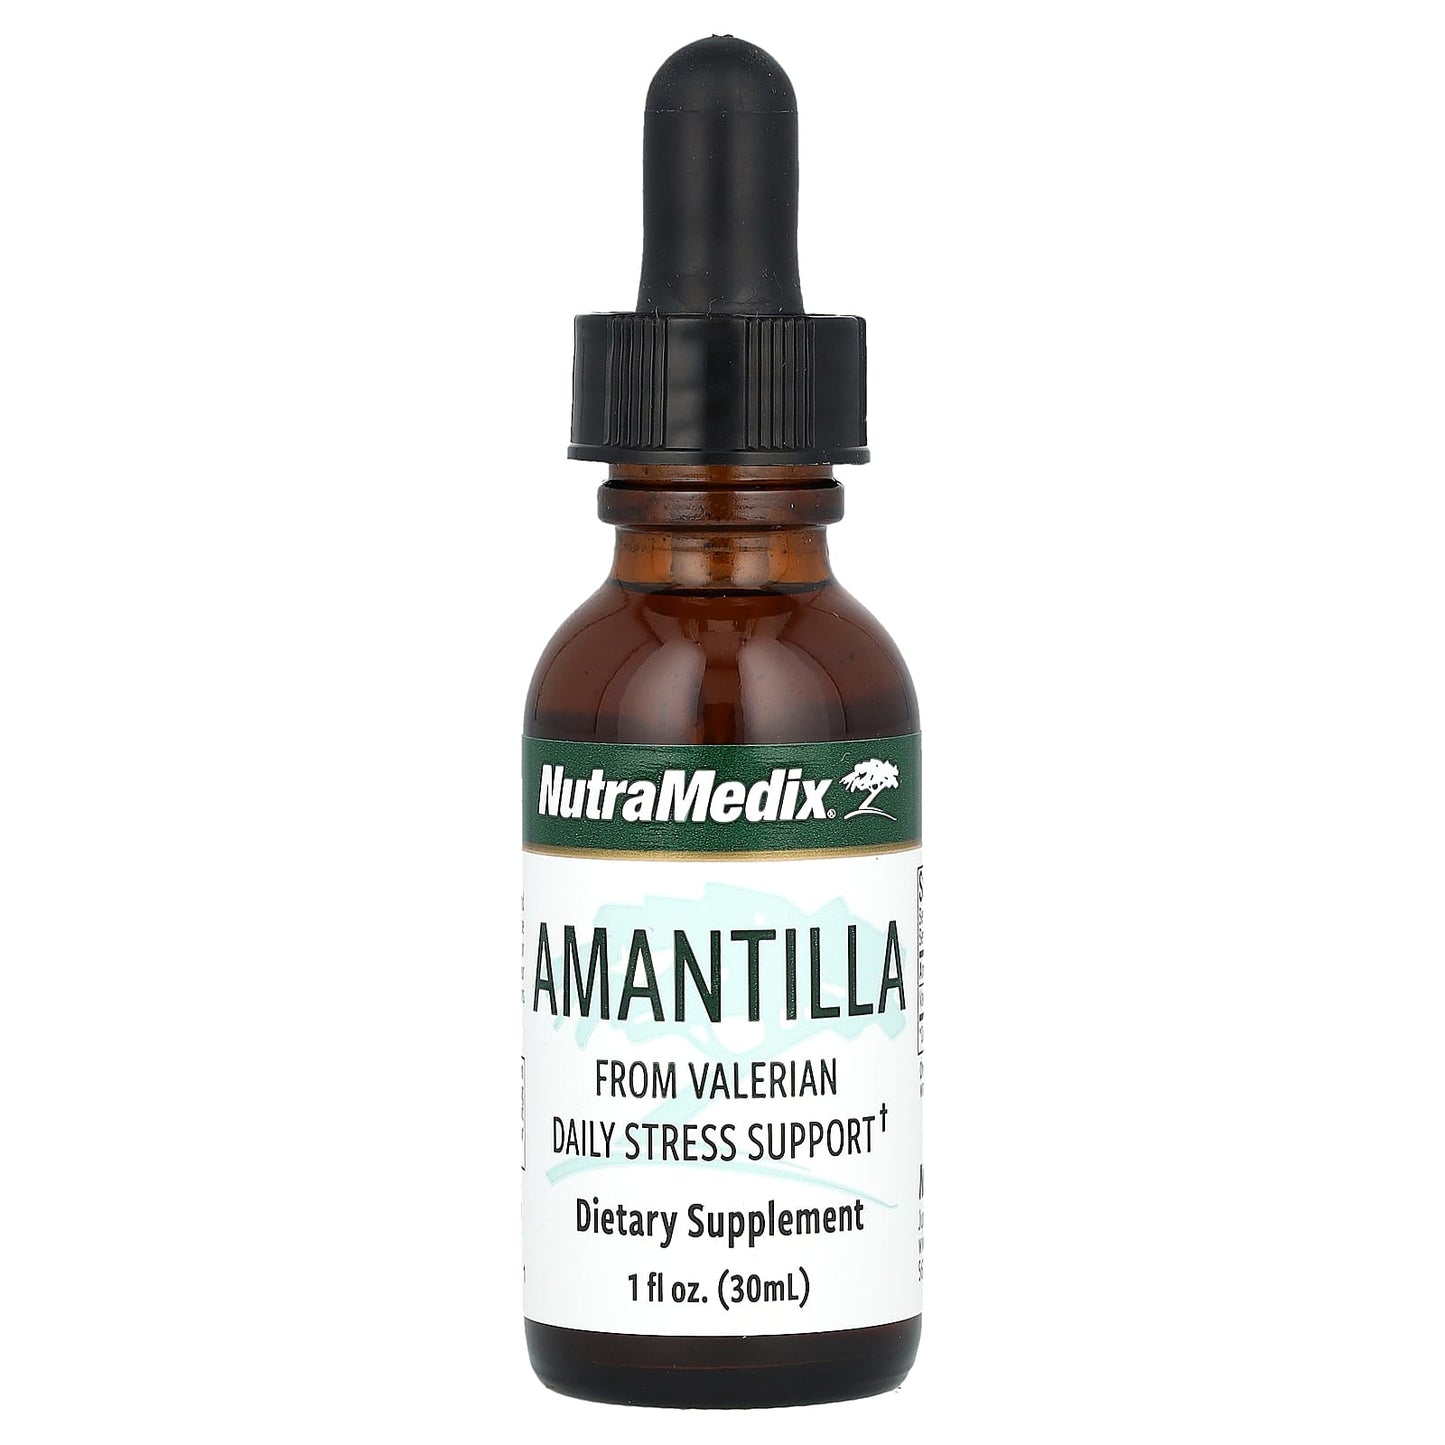 NutraMedix-Amantilla-Daily Stress Support-1 fl oz (30 ml)